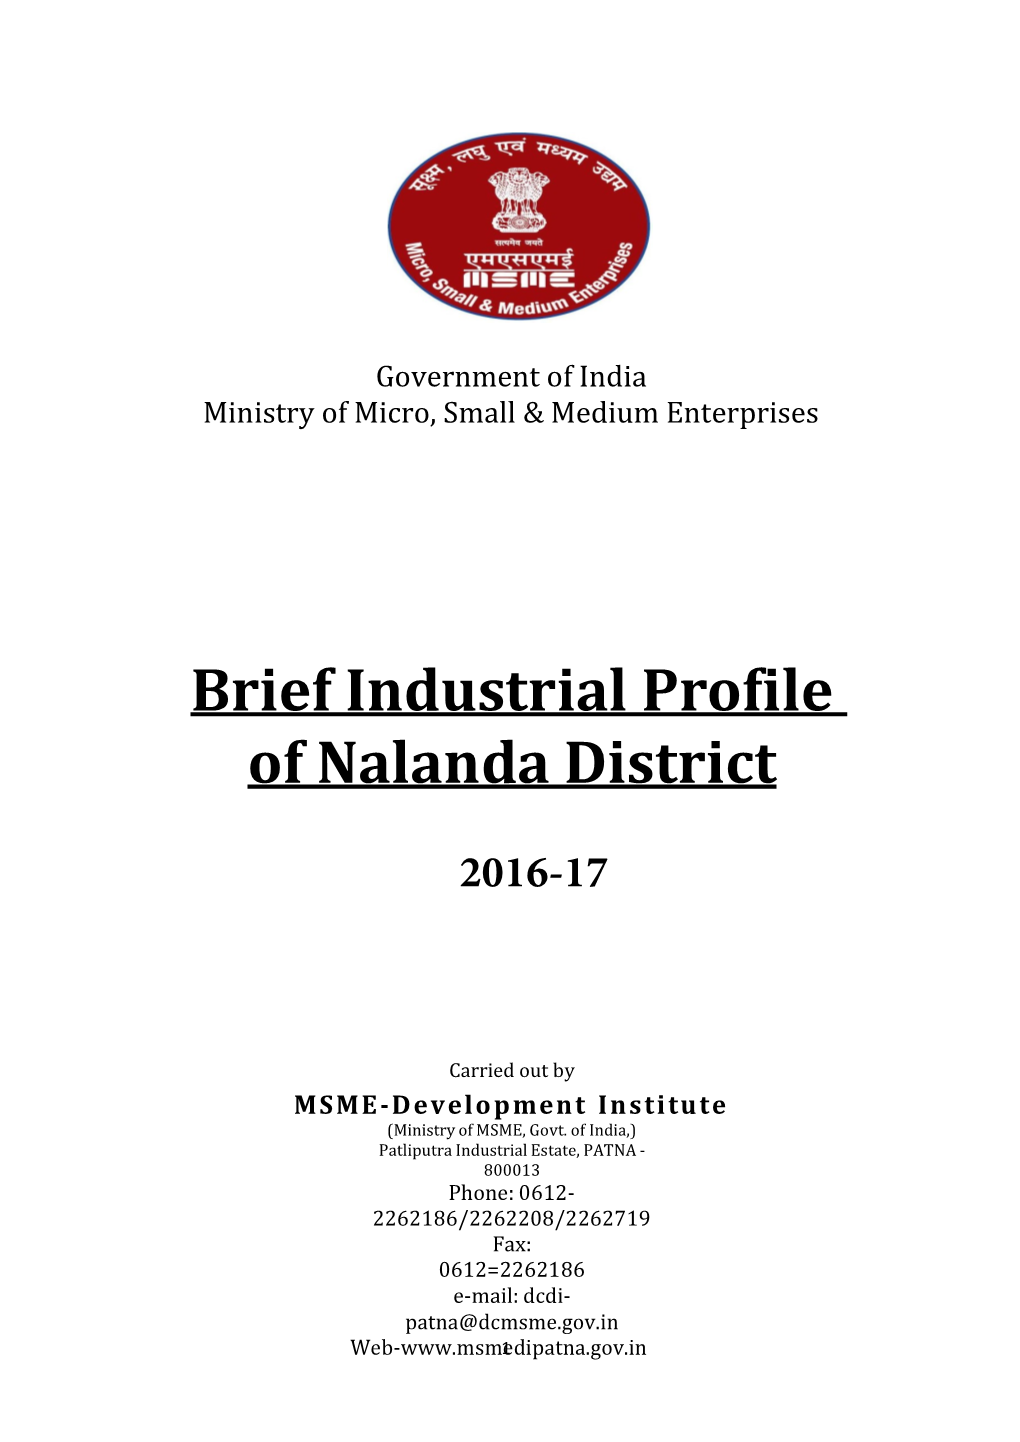 Brief Industrial Profile of Nalanda District